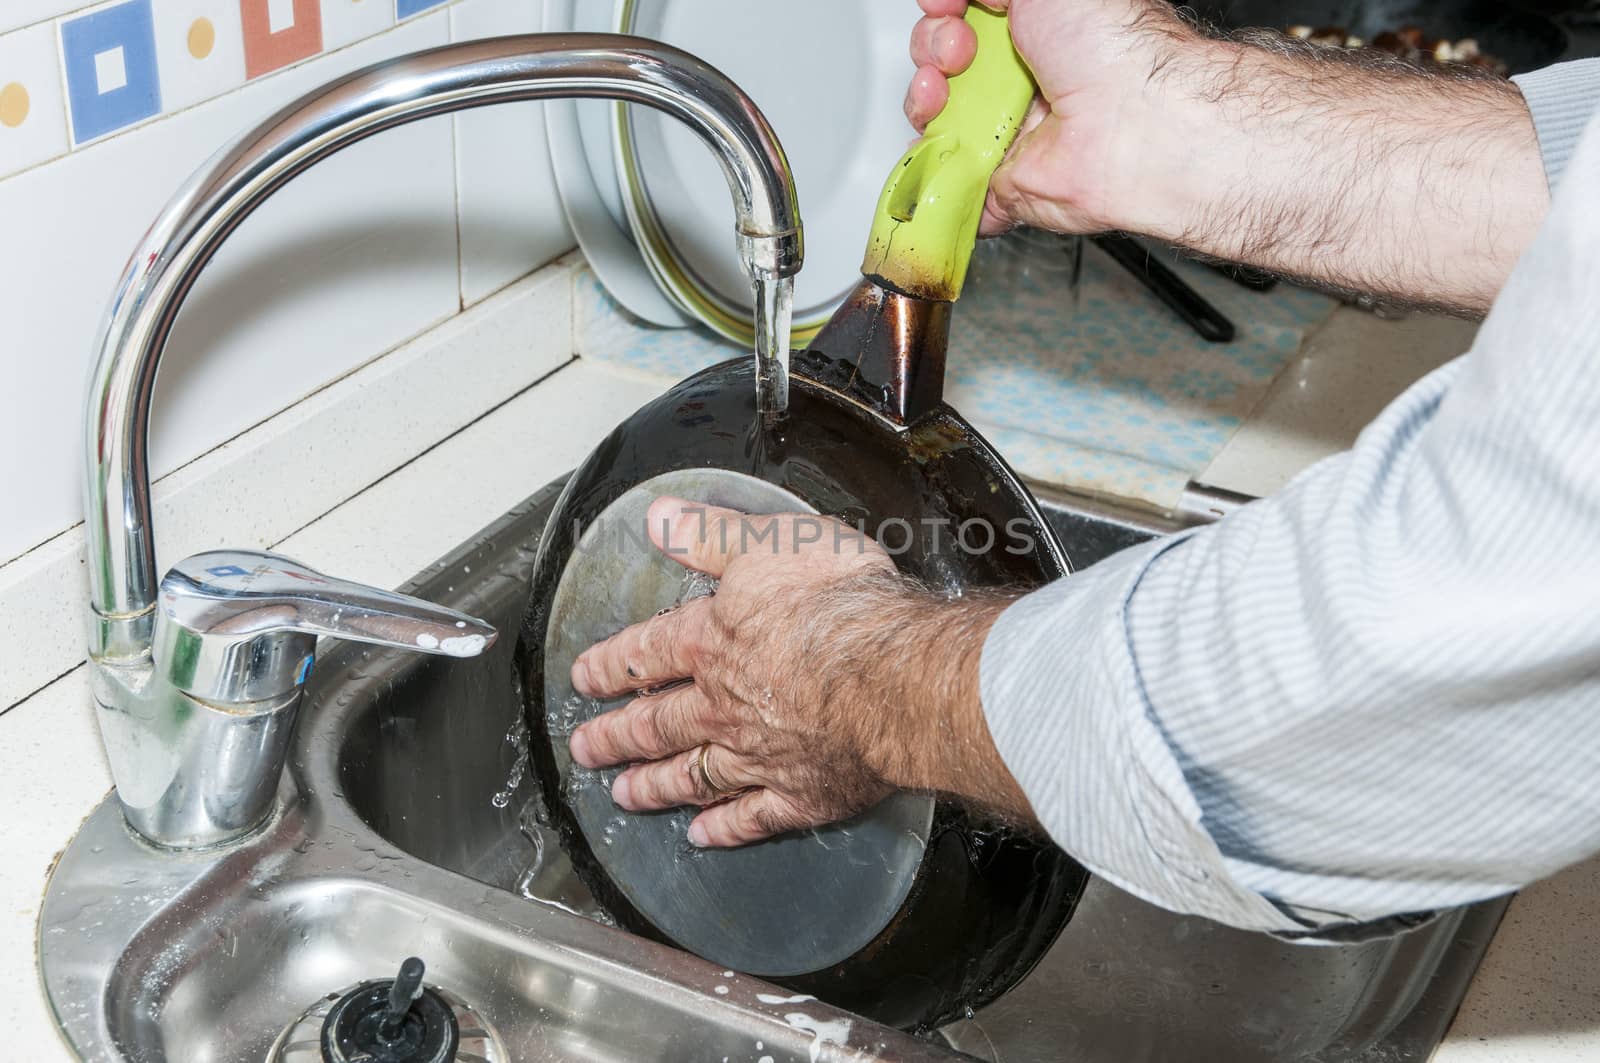 washing dishes by arnau2098